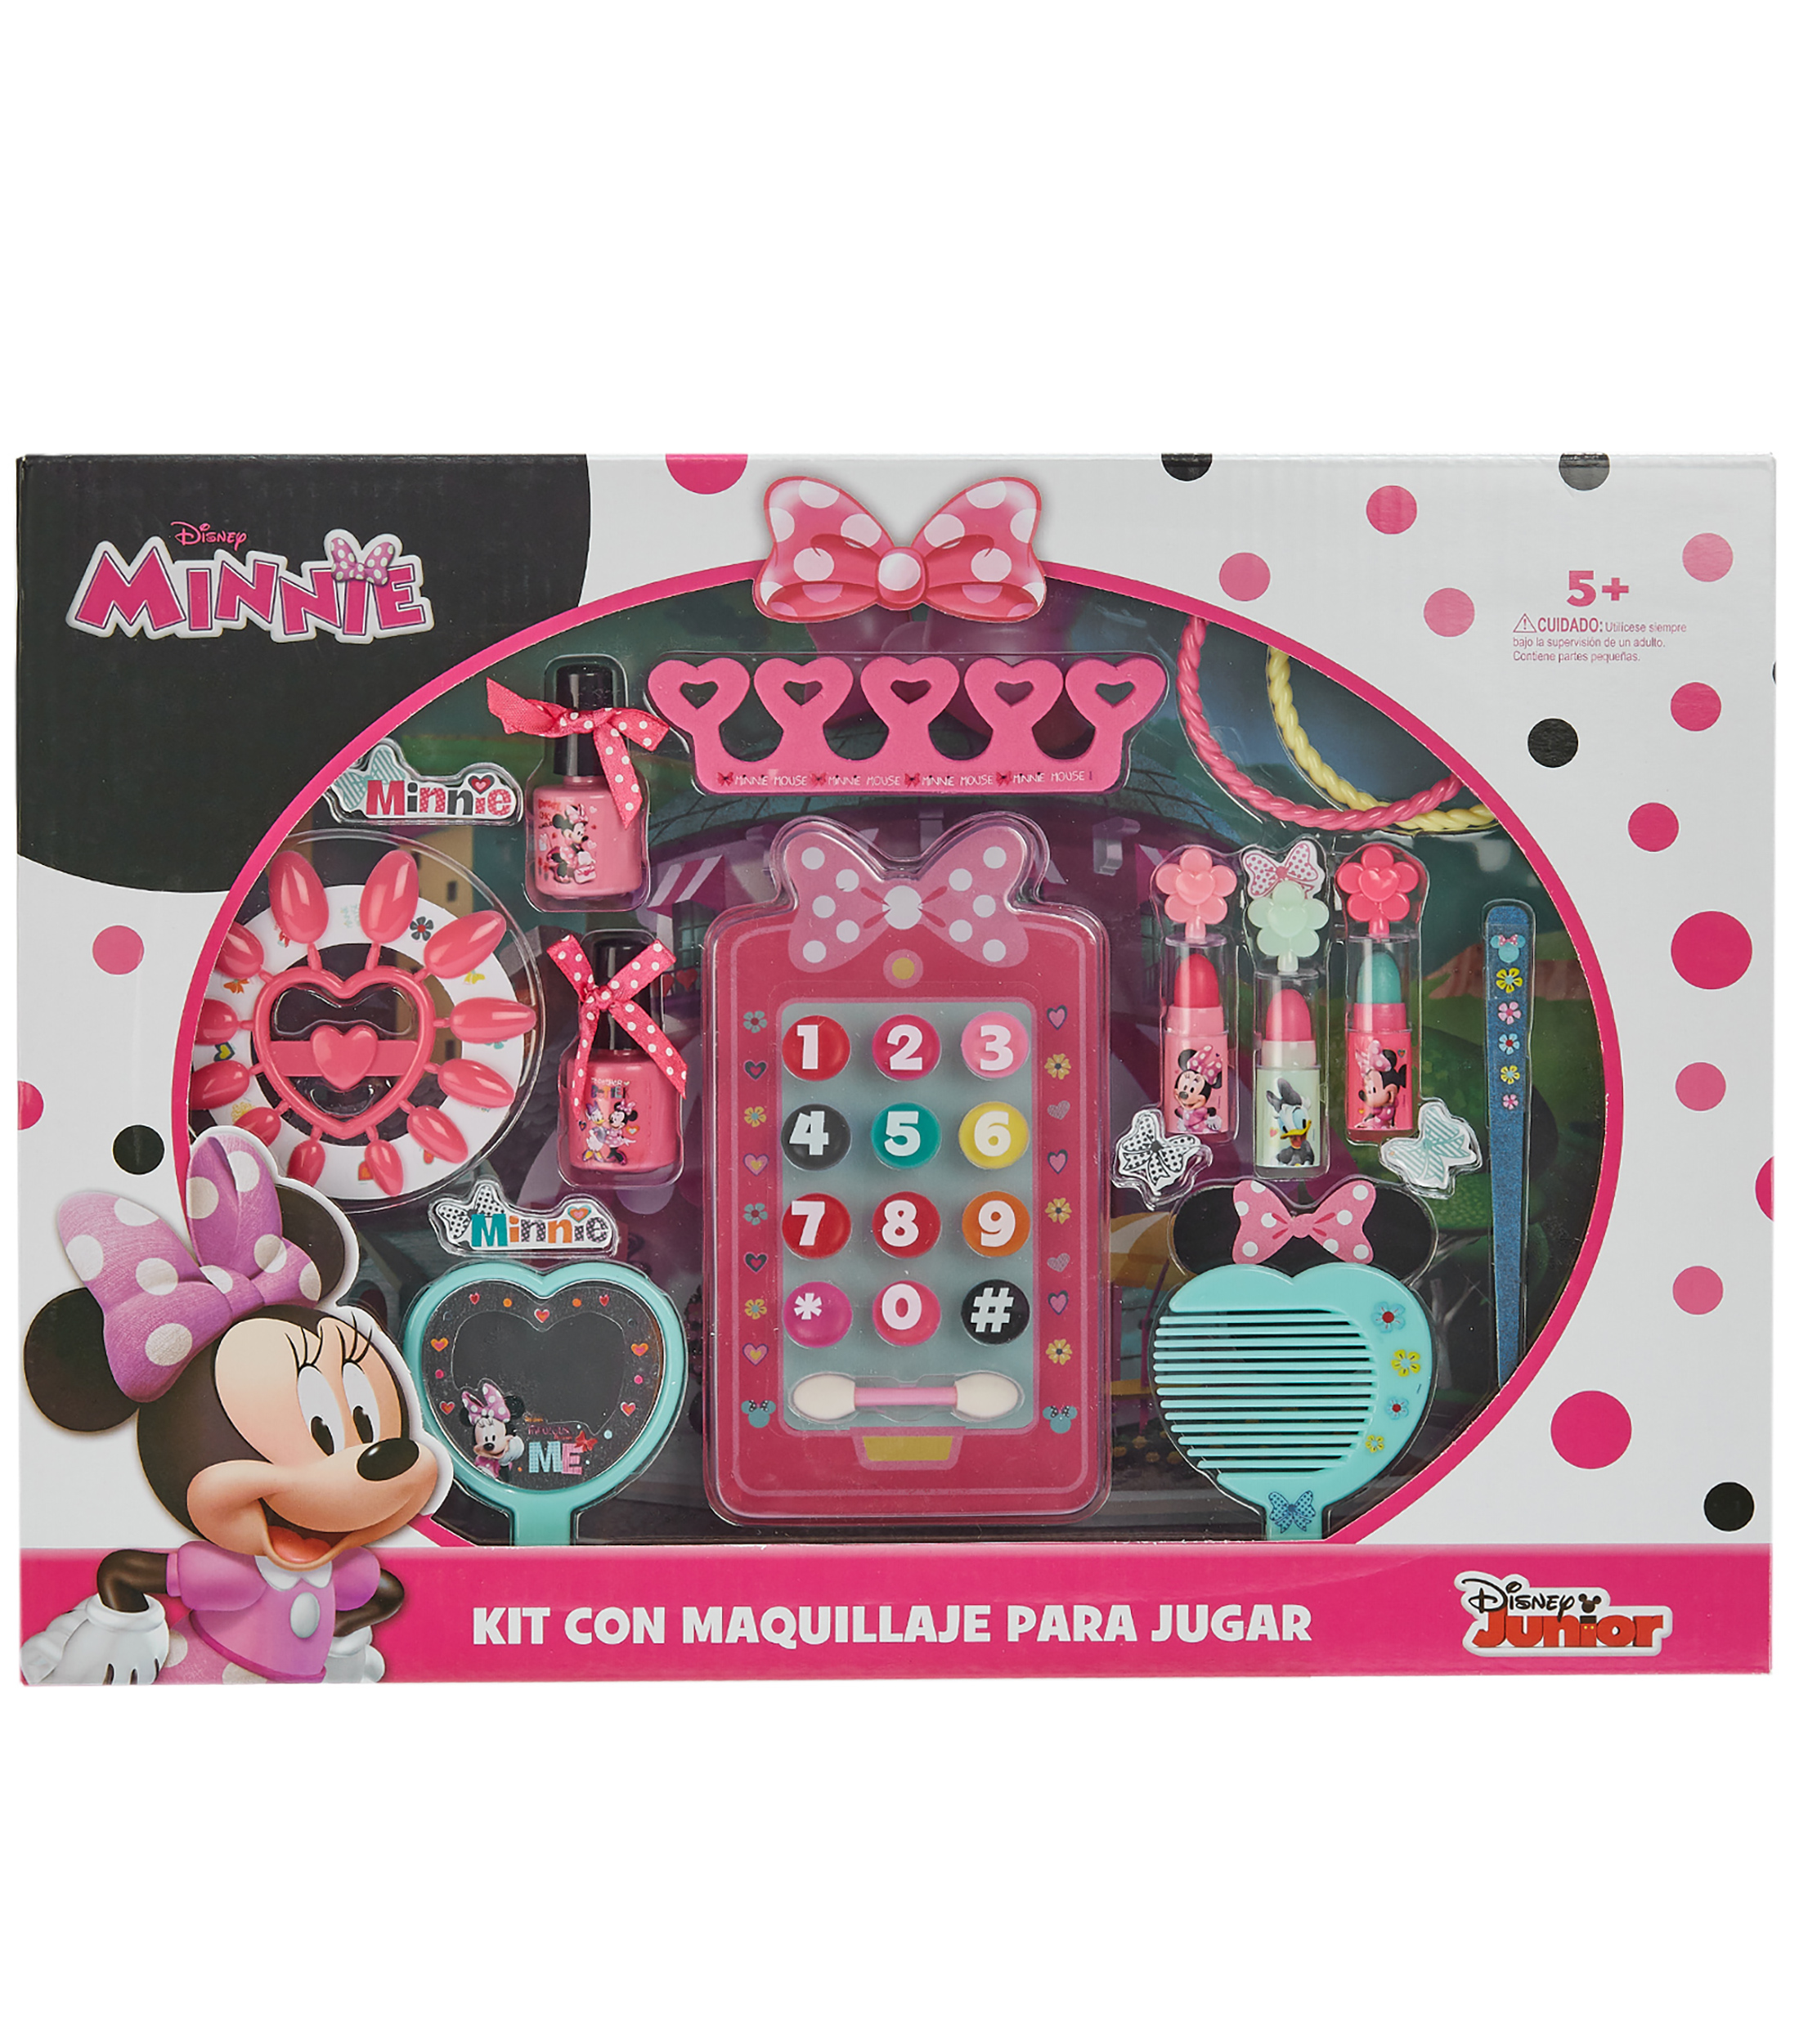 Minnie Mouse Minnie Mouse Estuche de Maquillaje - El Palacio de Hierro